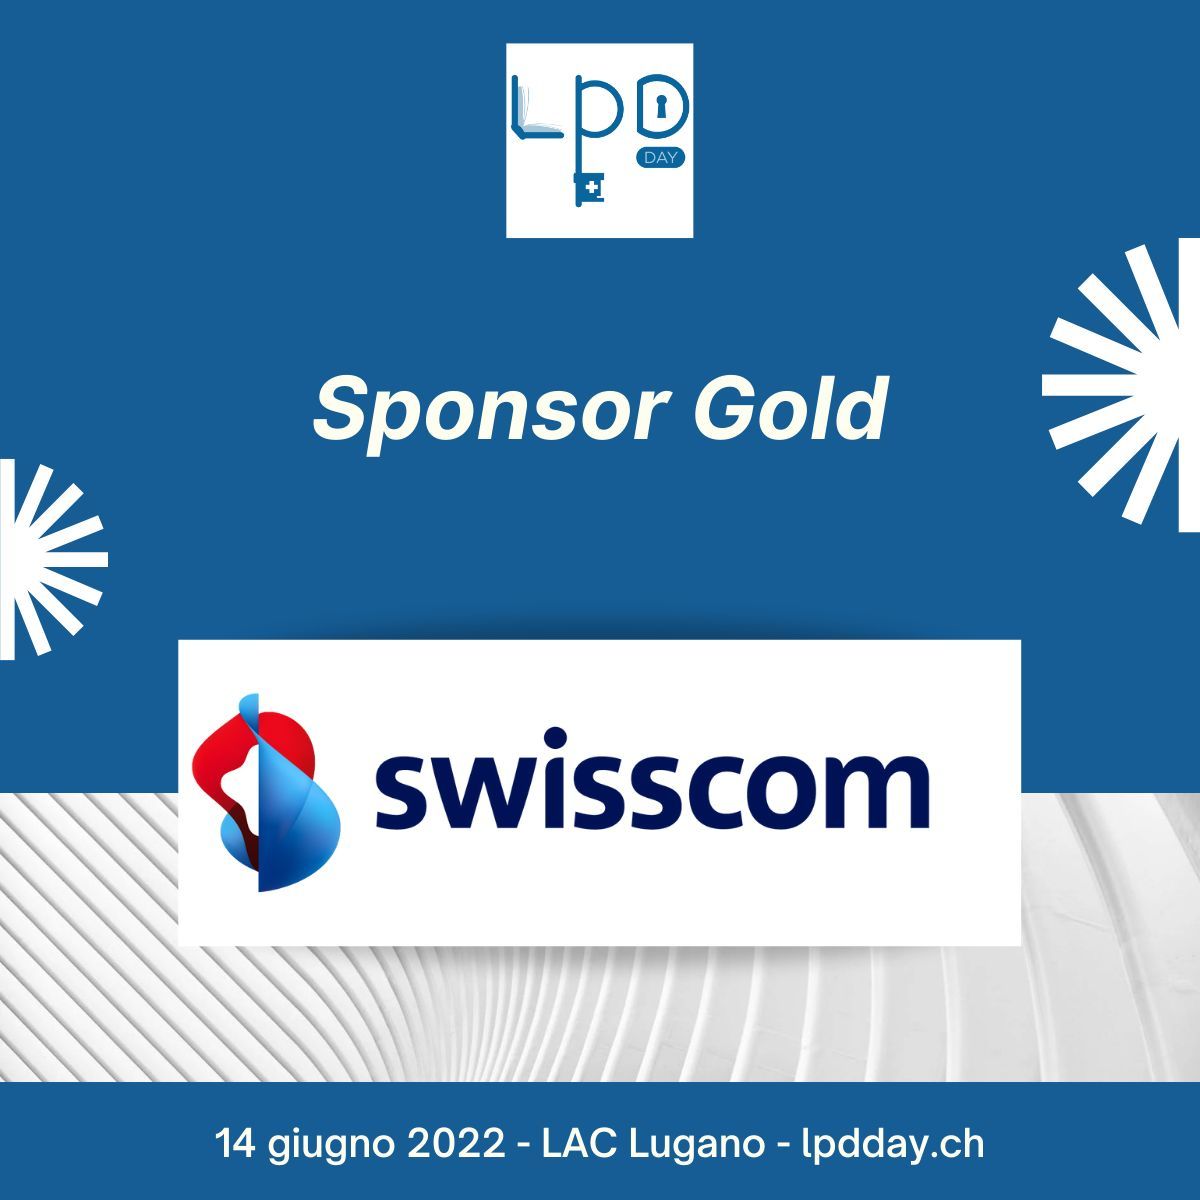 Swisscoms tillkännagivande som "Guldsponsor" av den första LPD-dagen